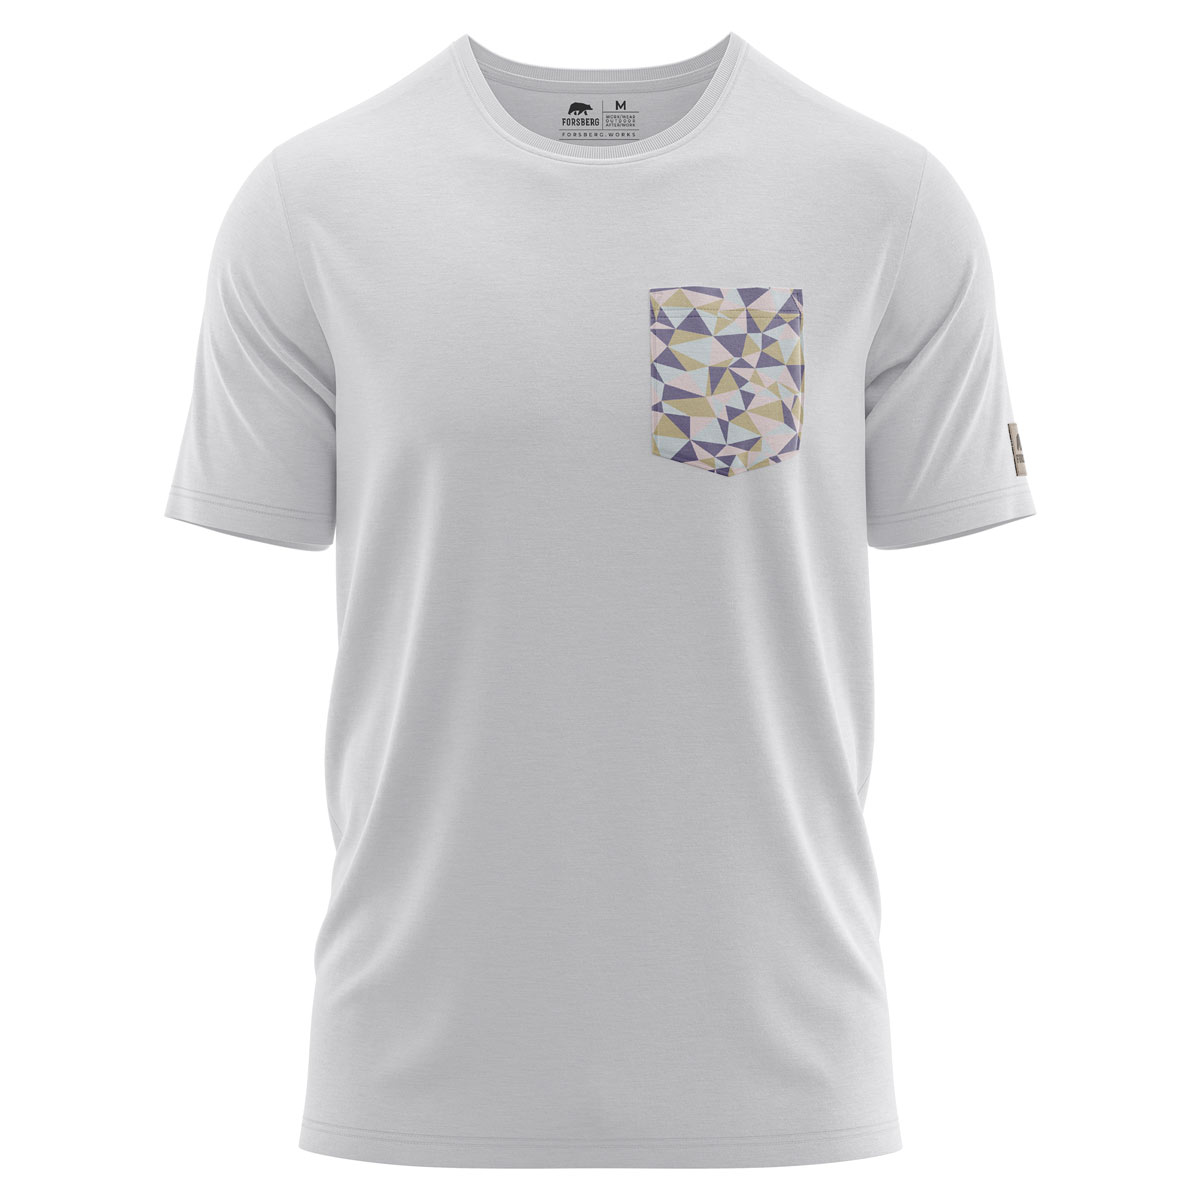 FORSBERG T-Shirt mit Brusttasche im polygonen Design weiss, petrol - 1